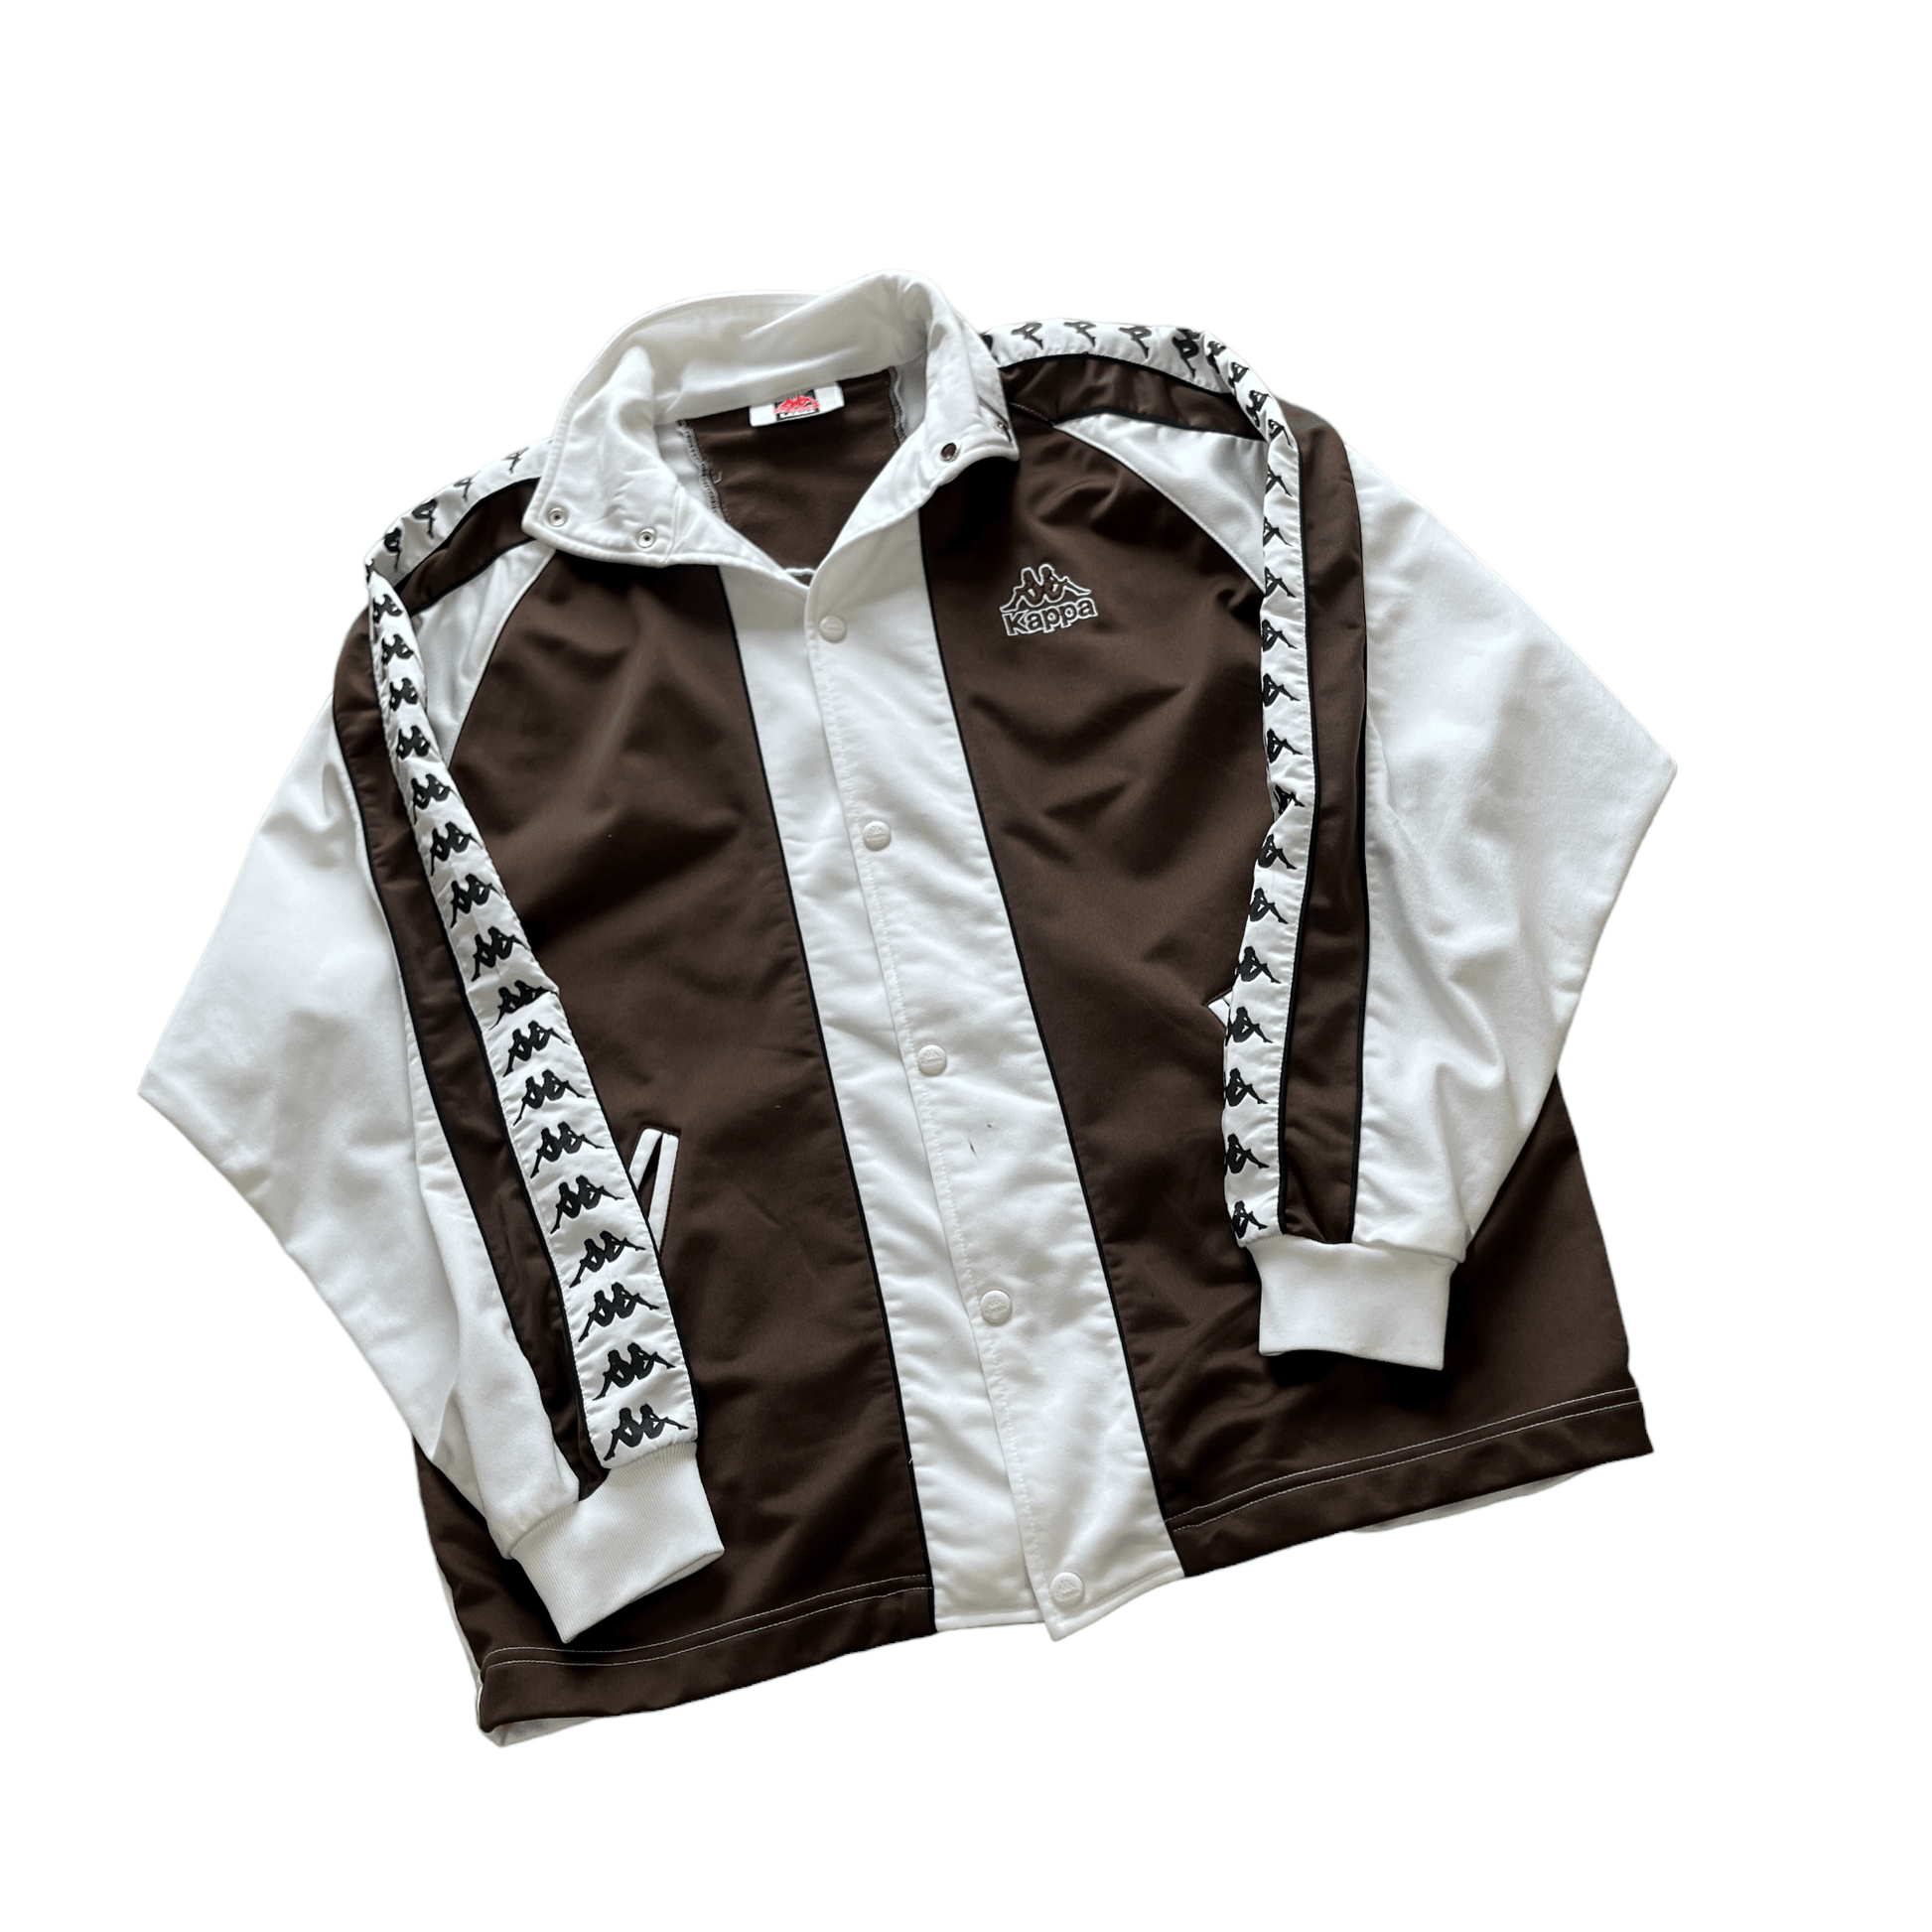 Vintage 90s Brown + White Kappa Jacket - Large - The Streetwear Studio